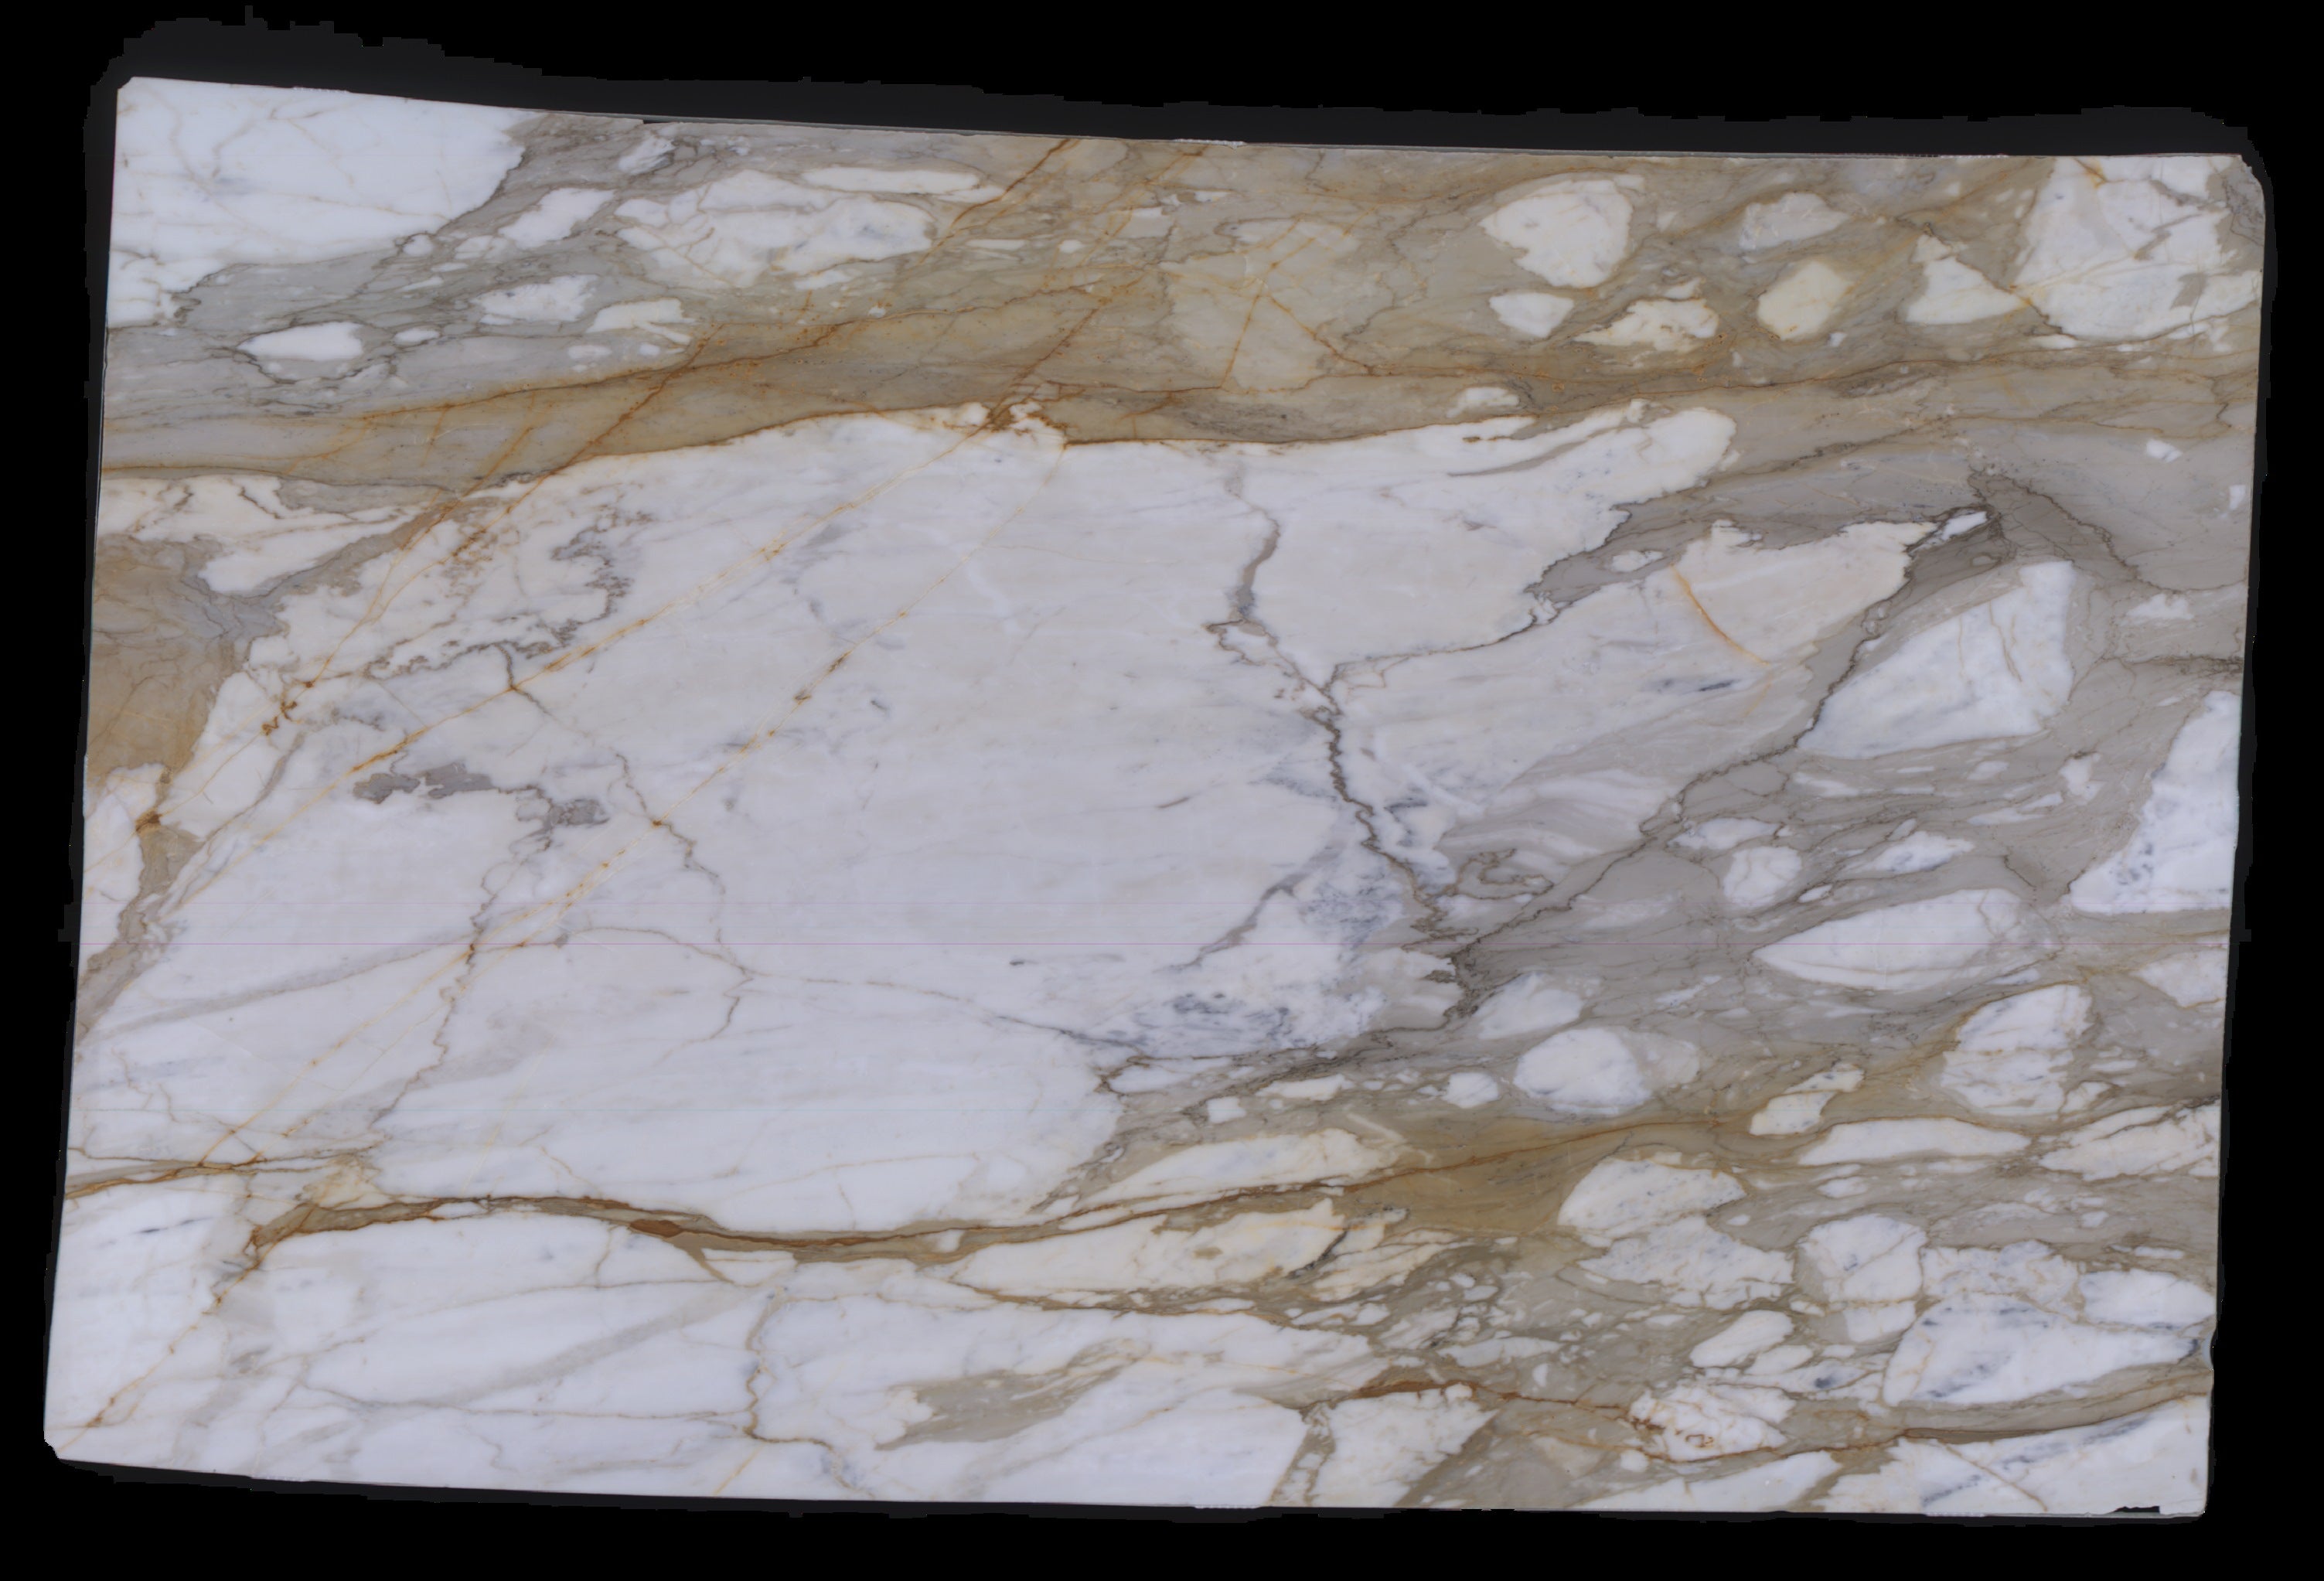  Calacatta Macchia Vecchia Marble Slab 3/4 - 953#52 -  VS 71x112 